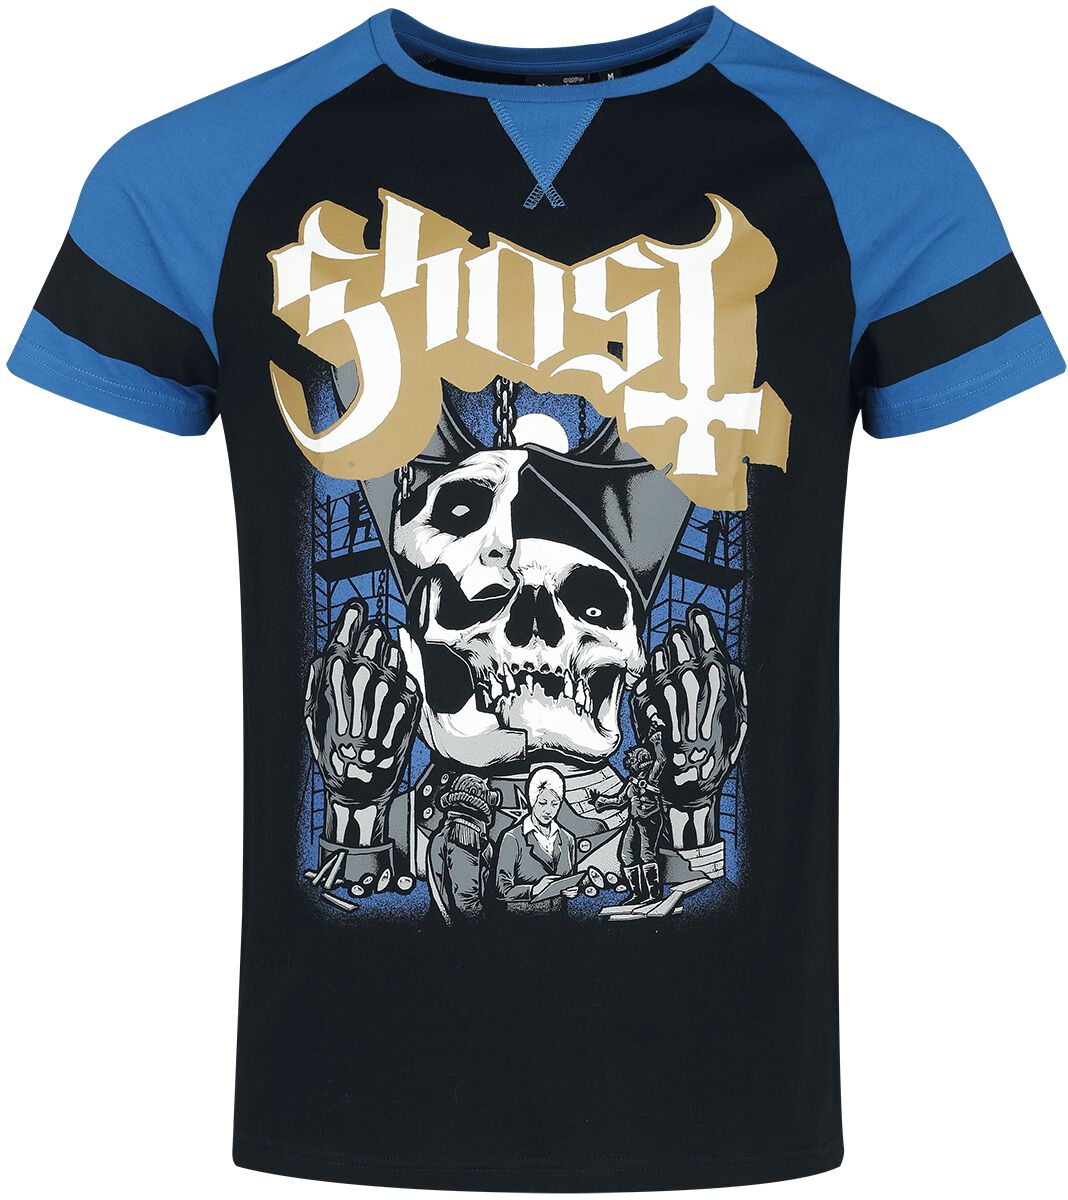 Ghost T-Shirt - EMP Signature Collection - S bis 3XL - für Männer - Größe XL - schwarz/blau  - EMP exklusives Merchandise!